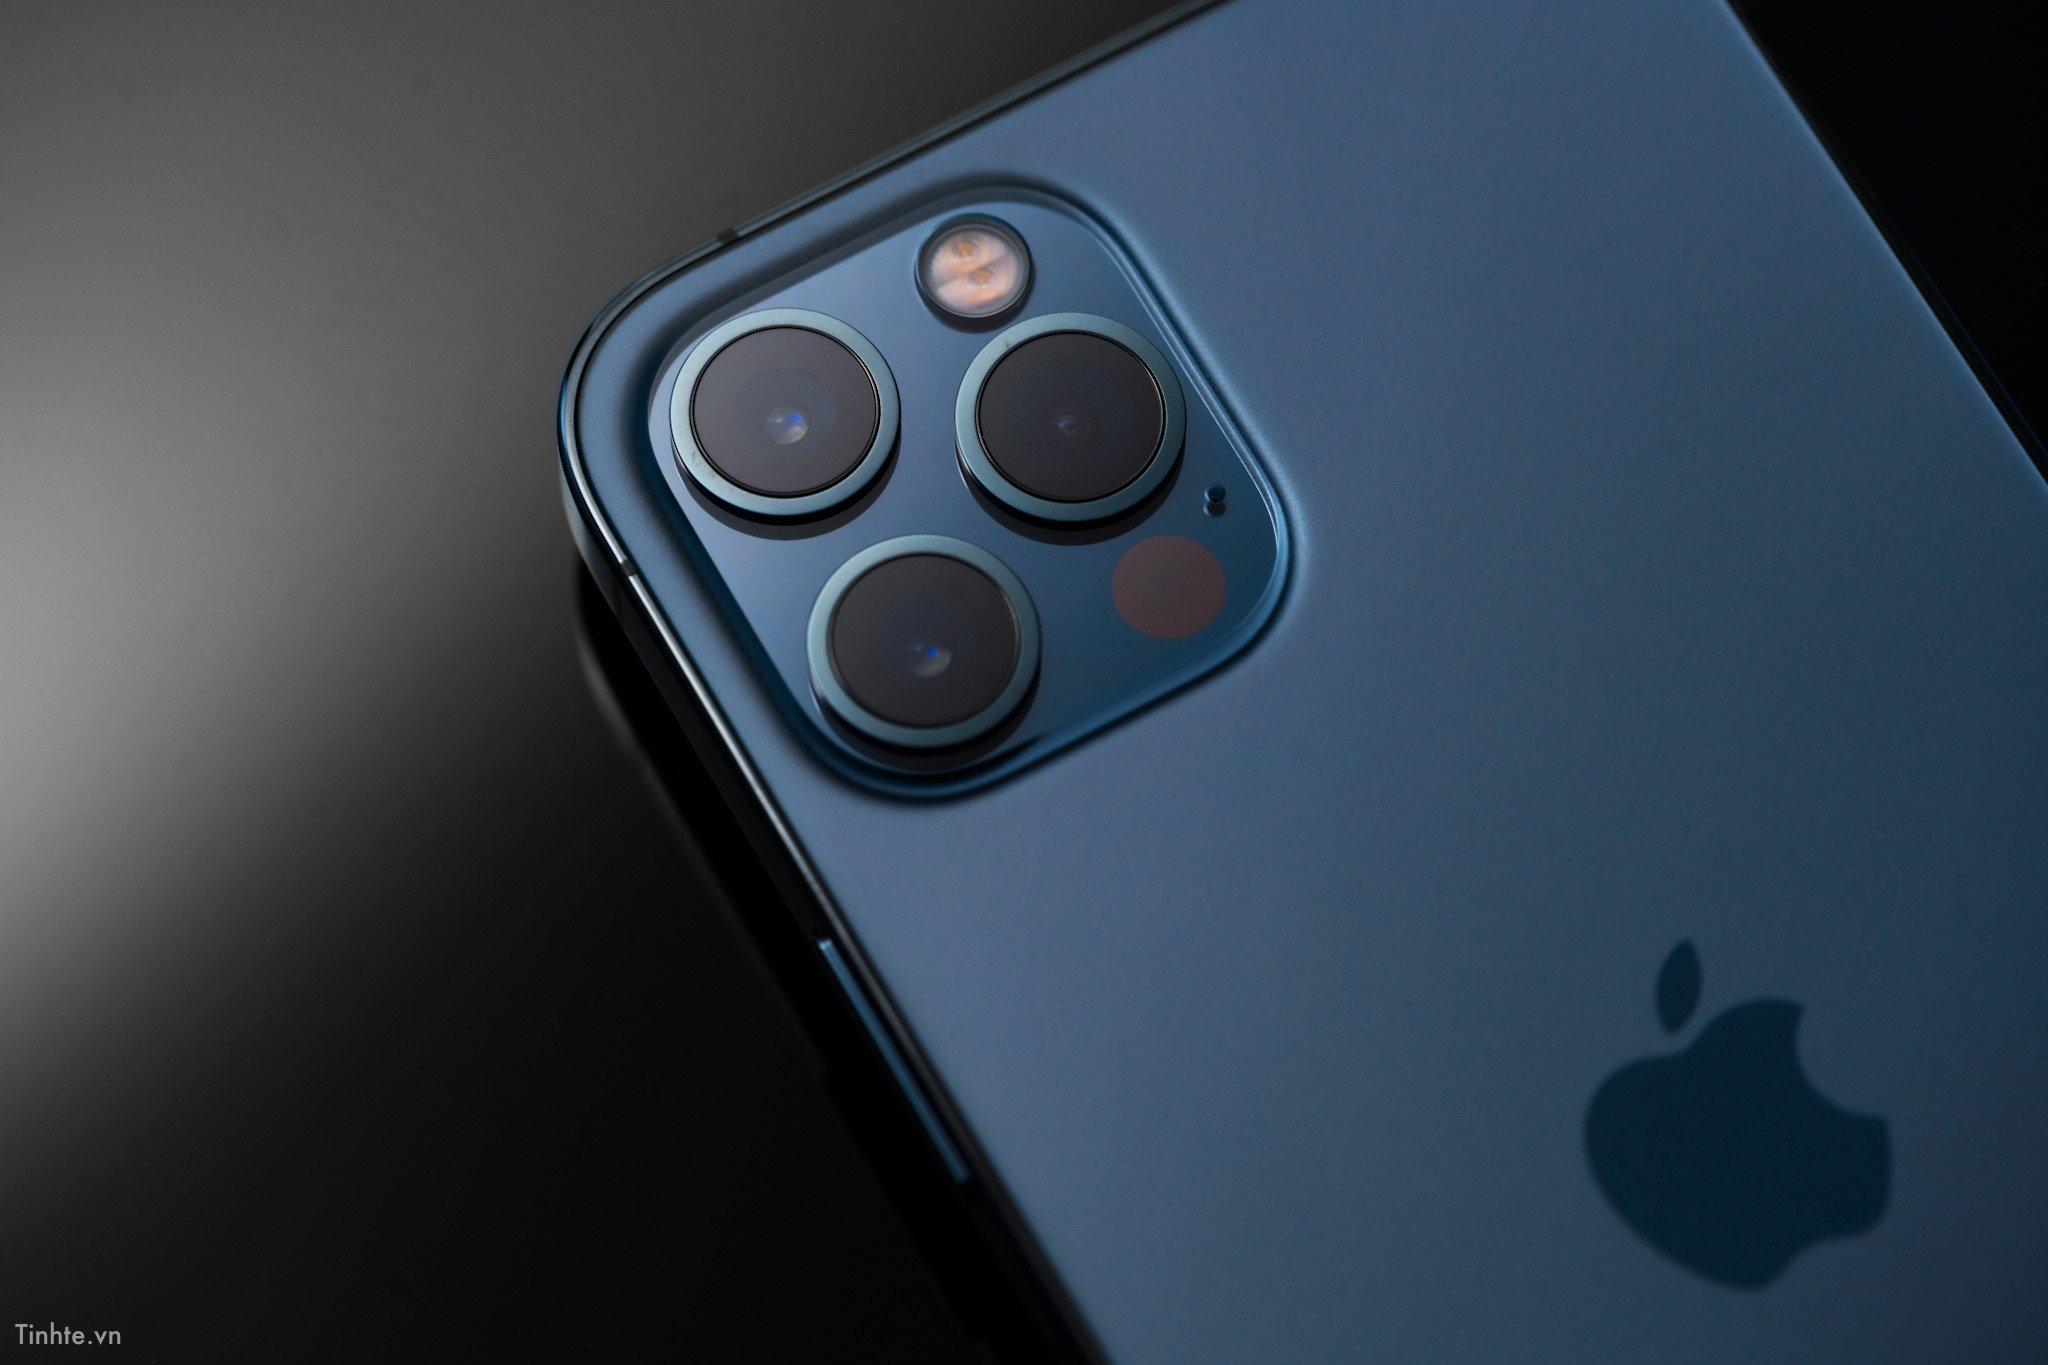 iPhone 12 Pro có cụm 3 camera độ phân giải cao và thiết kế dễ nhận biết